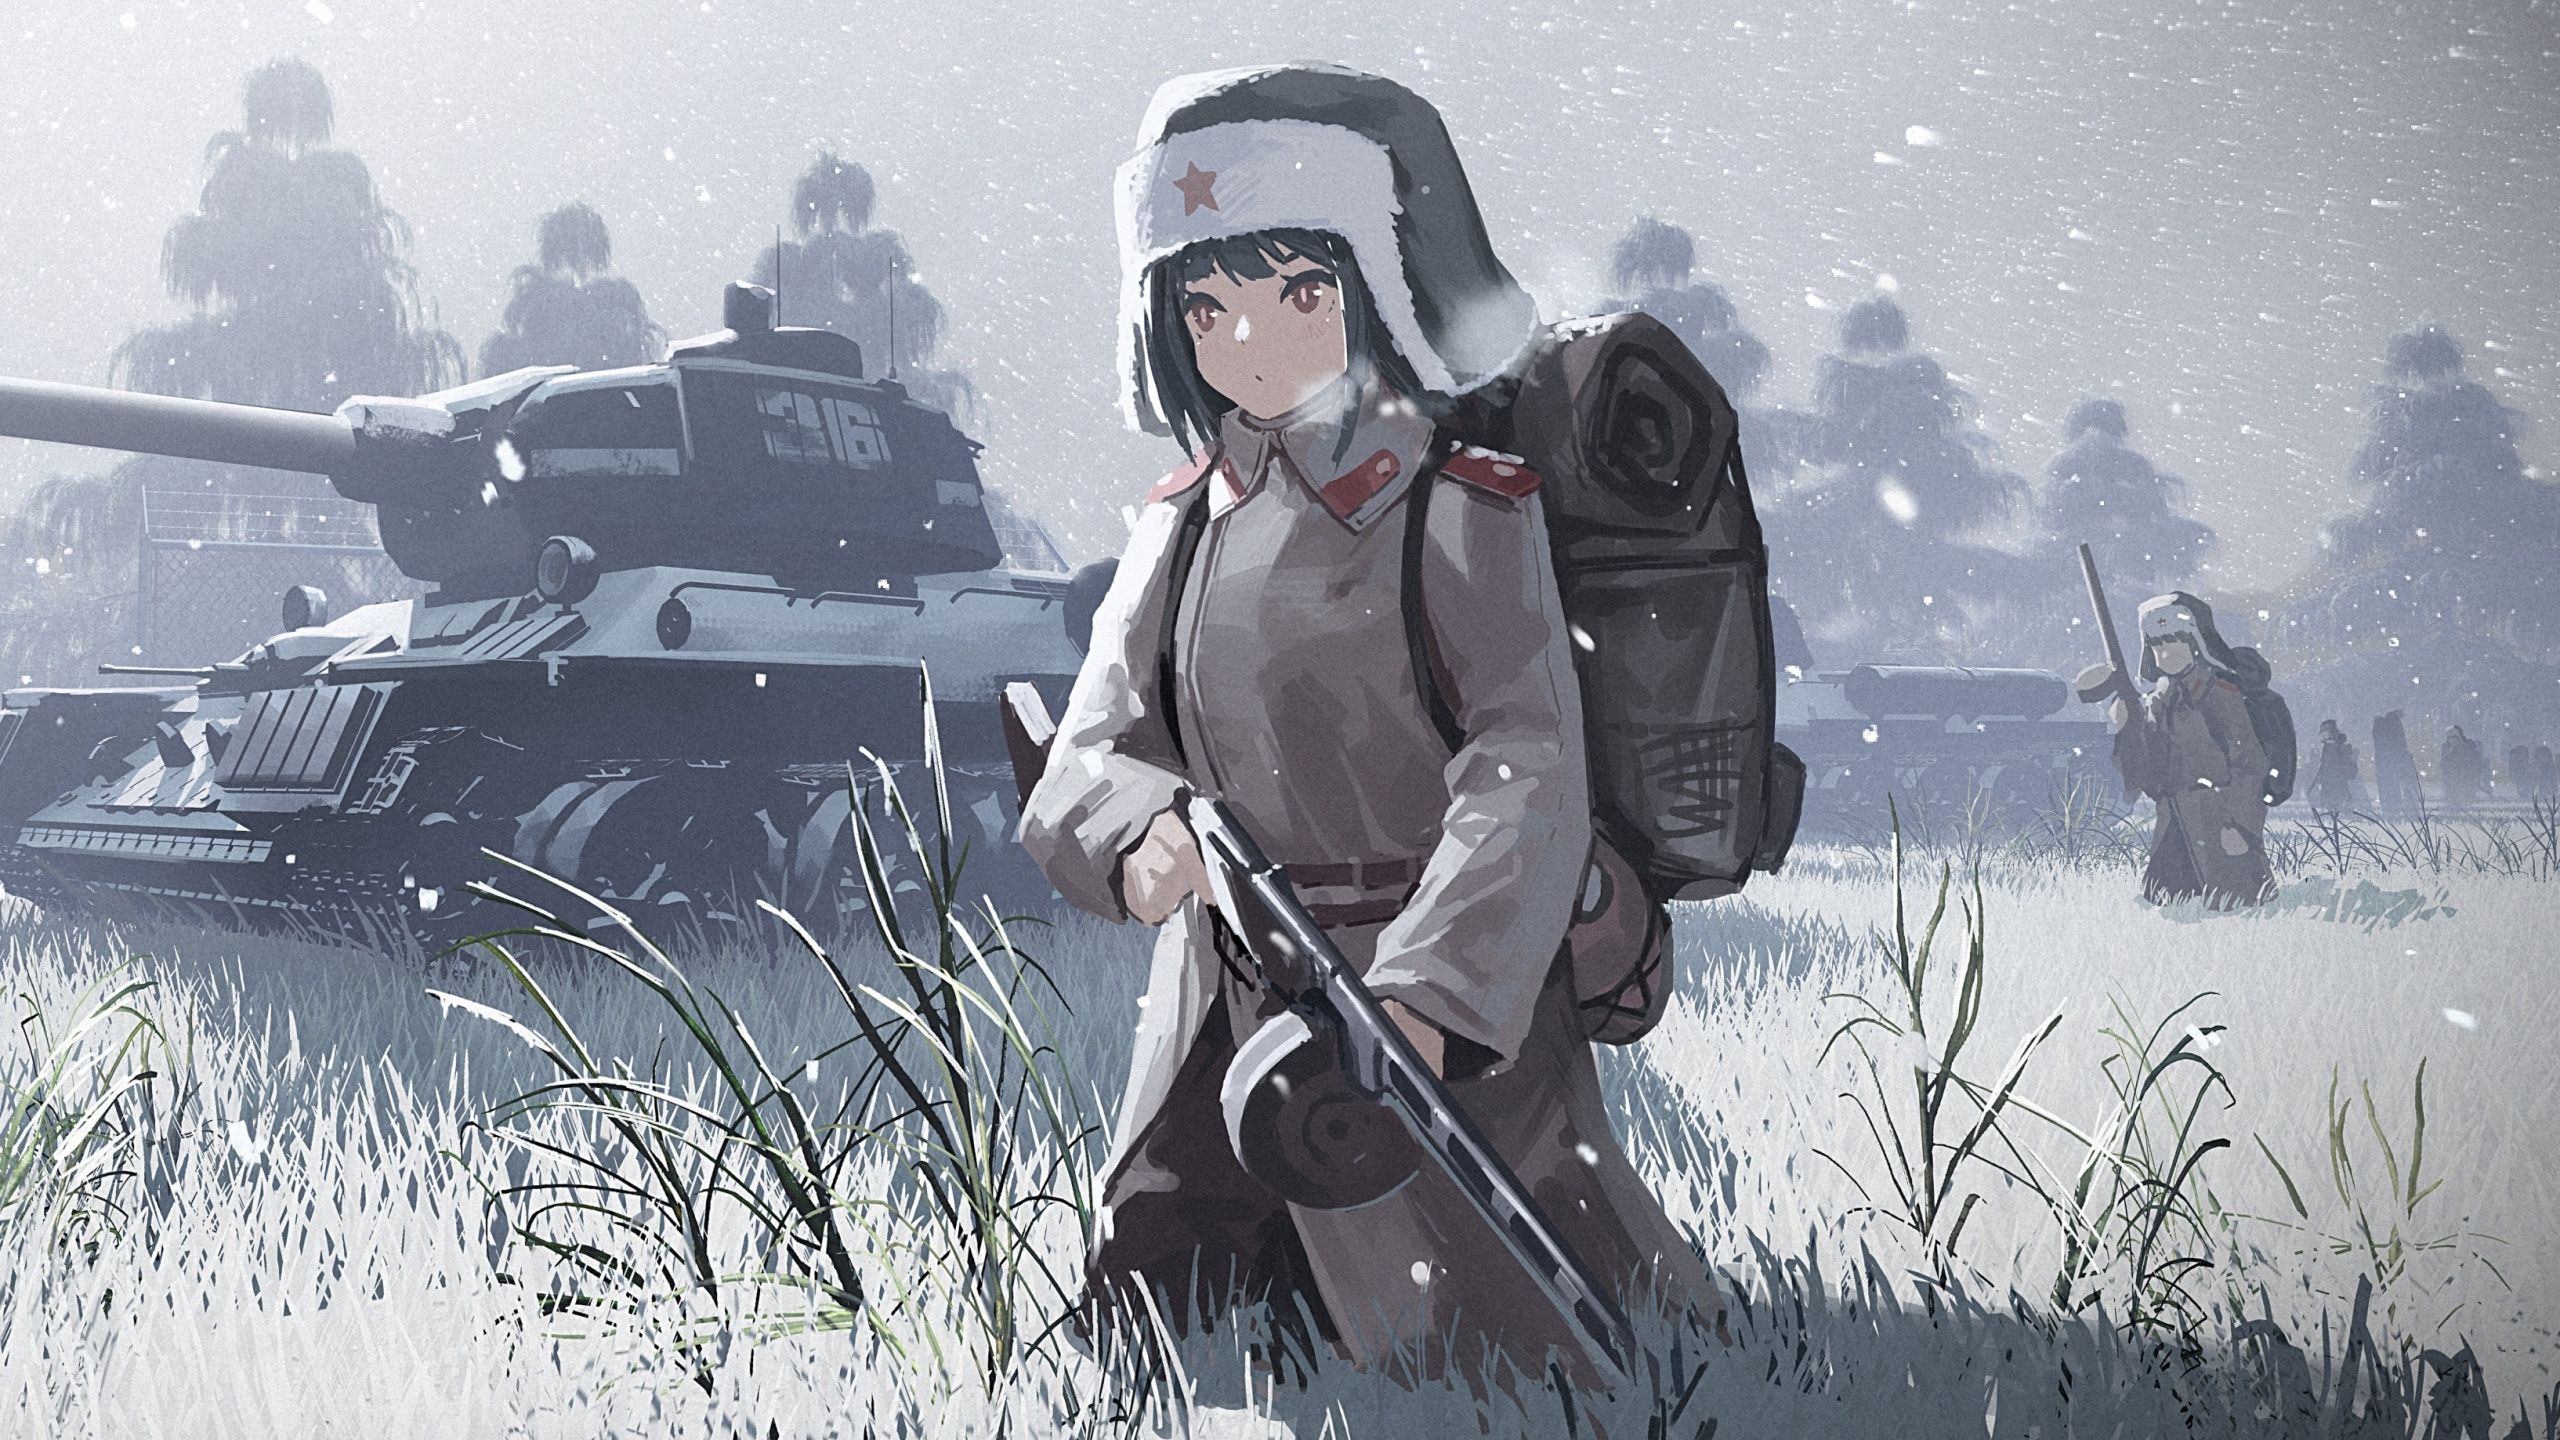 Anime Soldier Girl Wallpaper